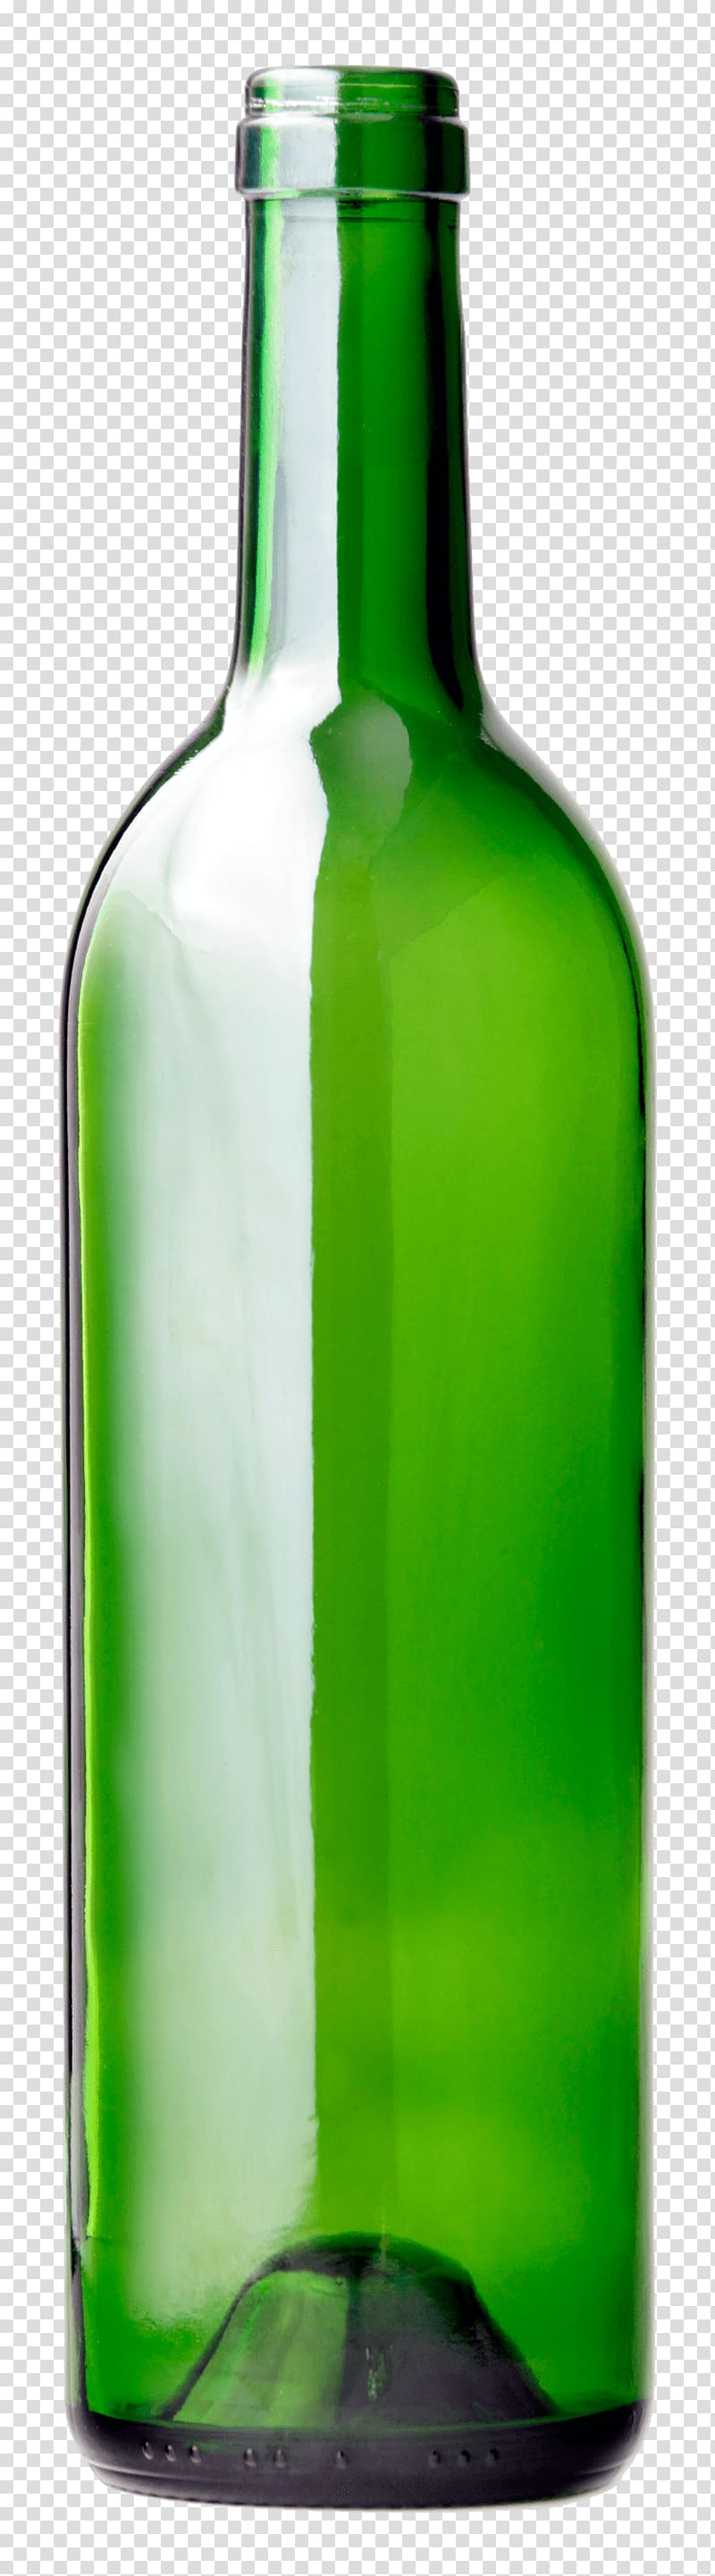 green glass bottle illustration, Bottle Long Green transparent background PNG clipart